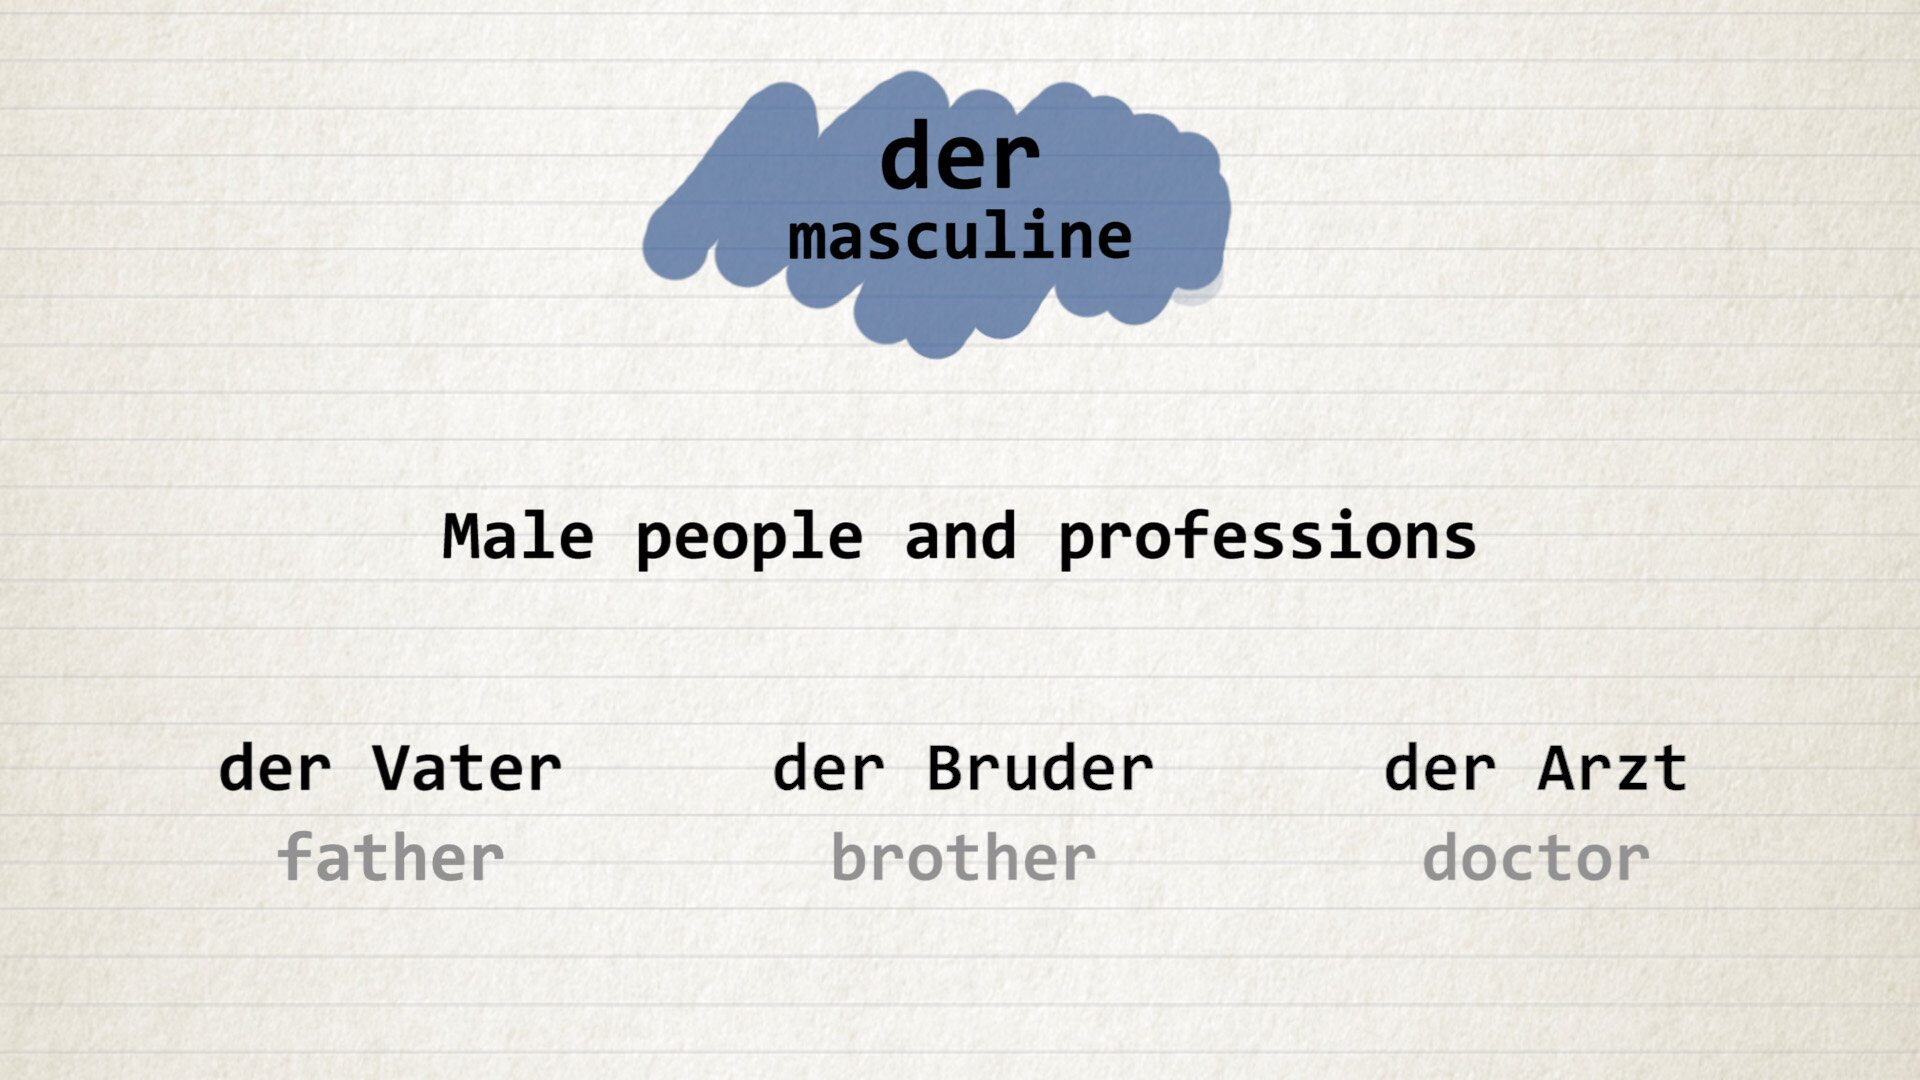 a1-1-male-professions-german-goethe-11percent.jpg